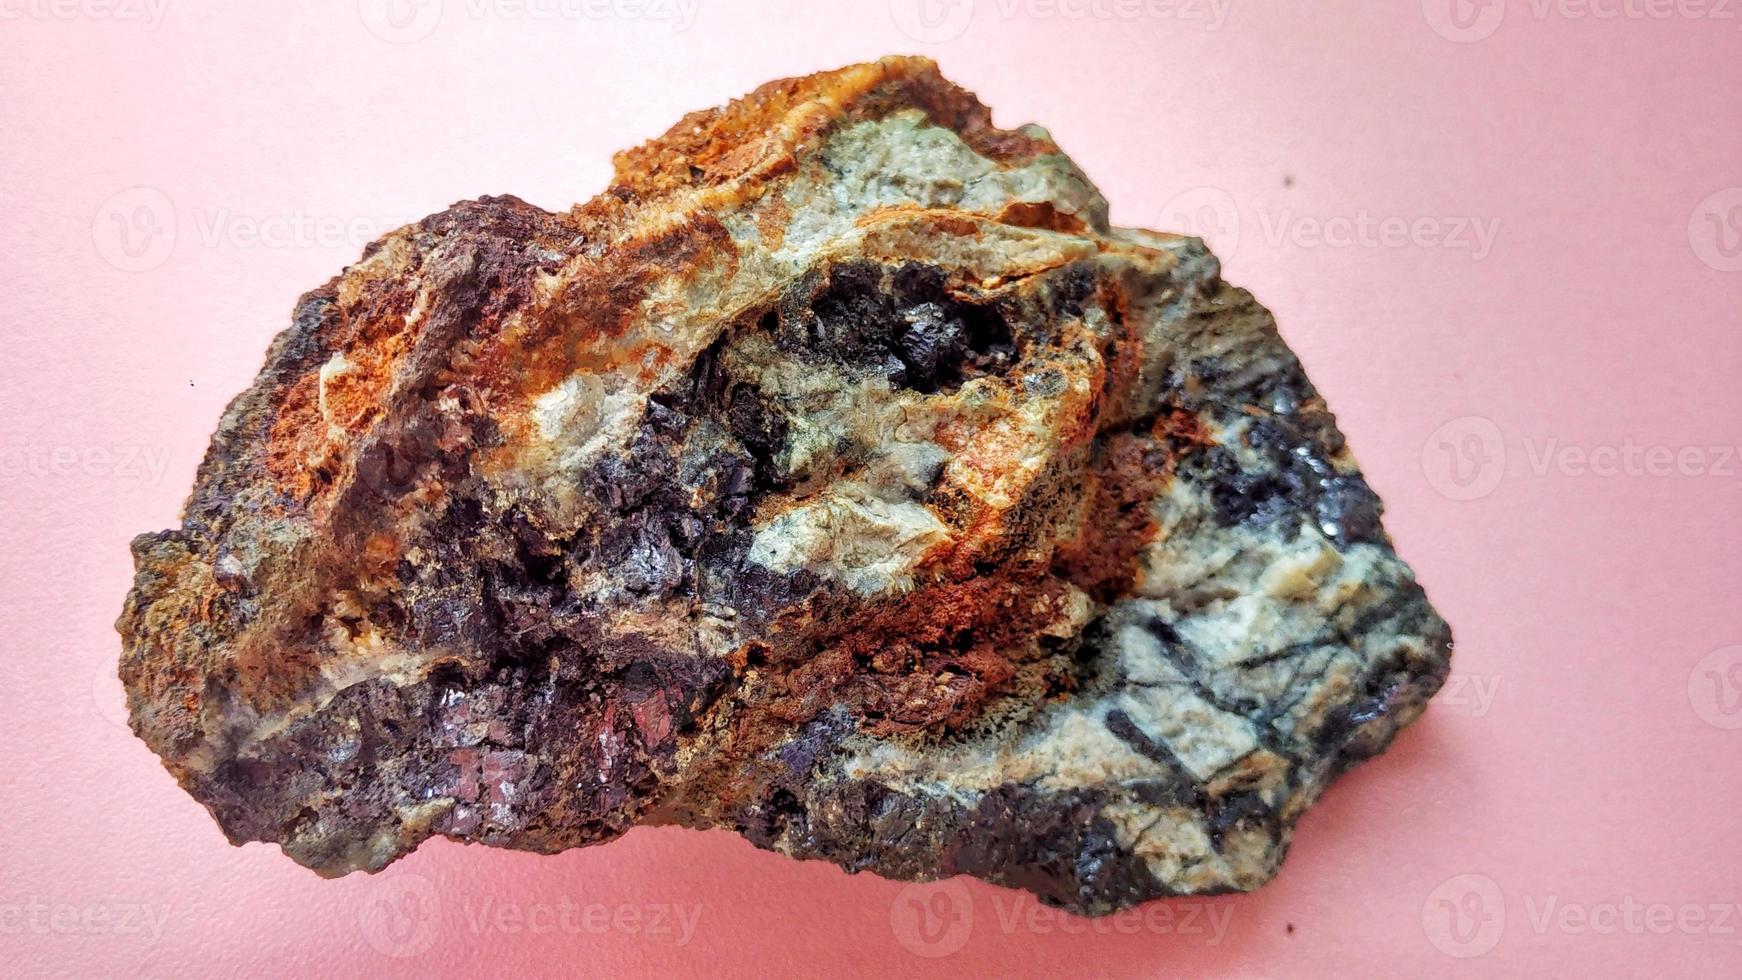 andésite ignée altérée en zone d'altération hydrothermale, avec des minéraux filoniens de quartz, de chlorite et de pyrite noire brillante, sur fond rose. indonésie, exploration géologique. photo